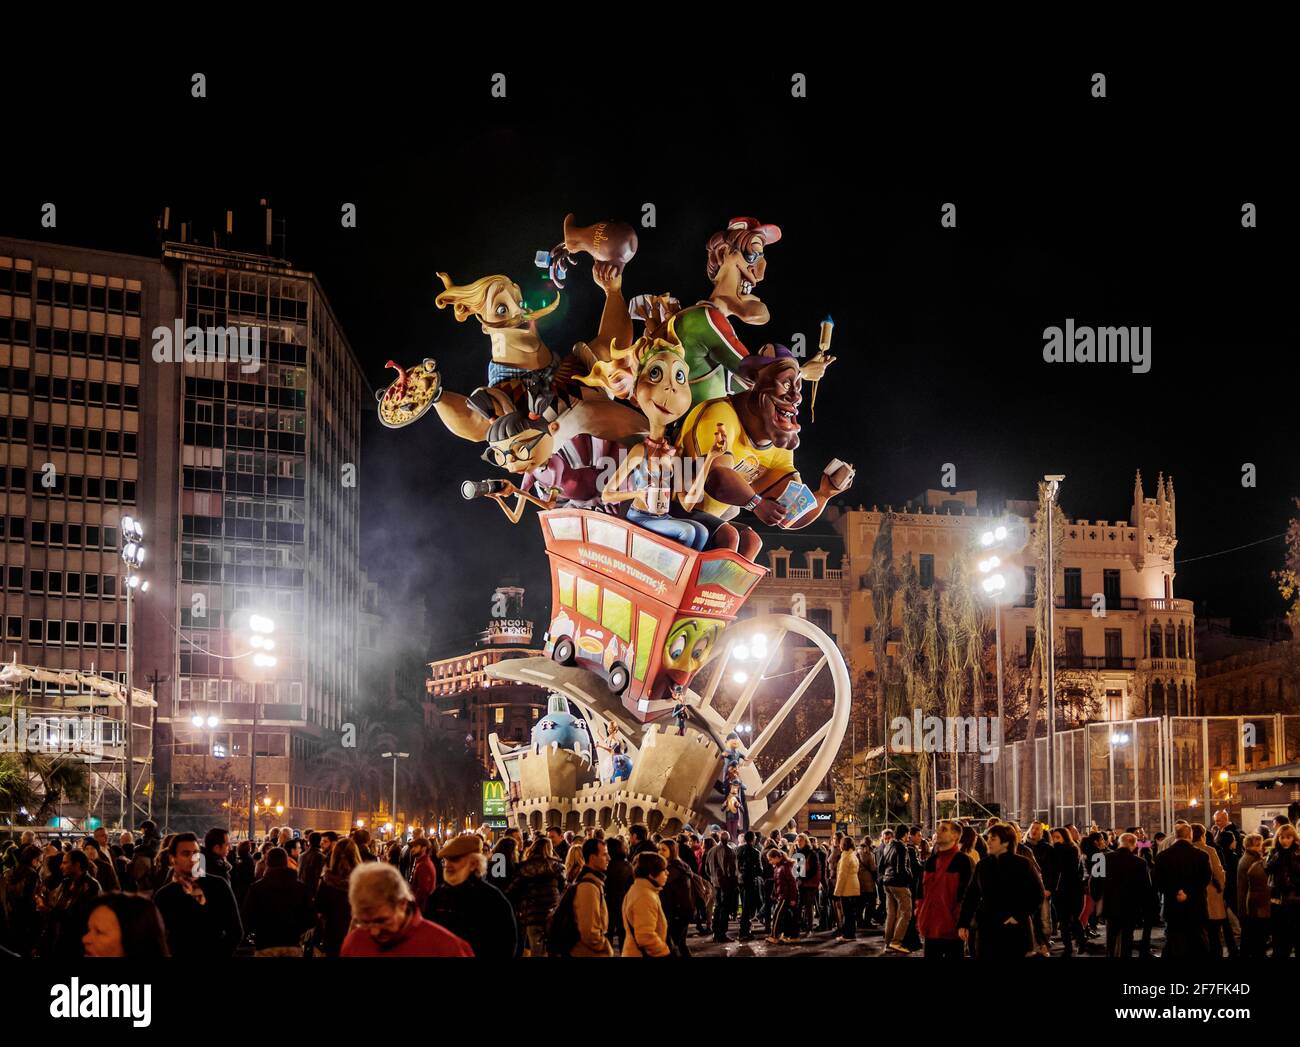 Die Fallas (Fallas), eine traditionelle Feier, die jährlich zum Gedenken an den heiligen Josef, Valencia, Spanien und Europa stattfindet Stockfoto